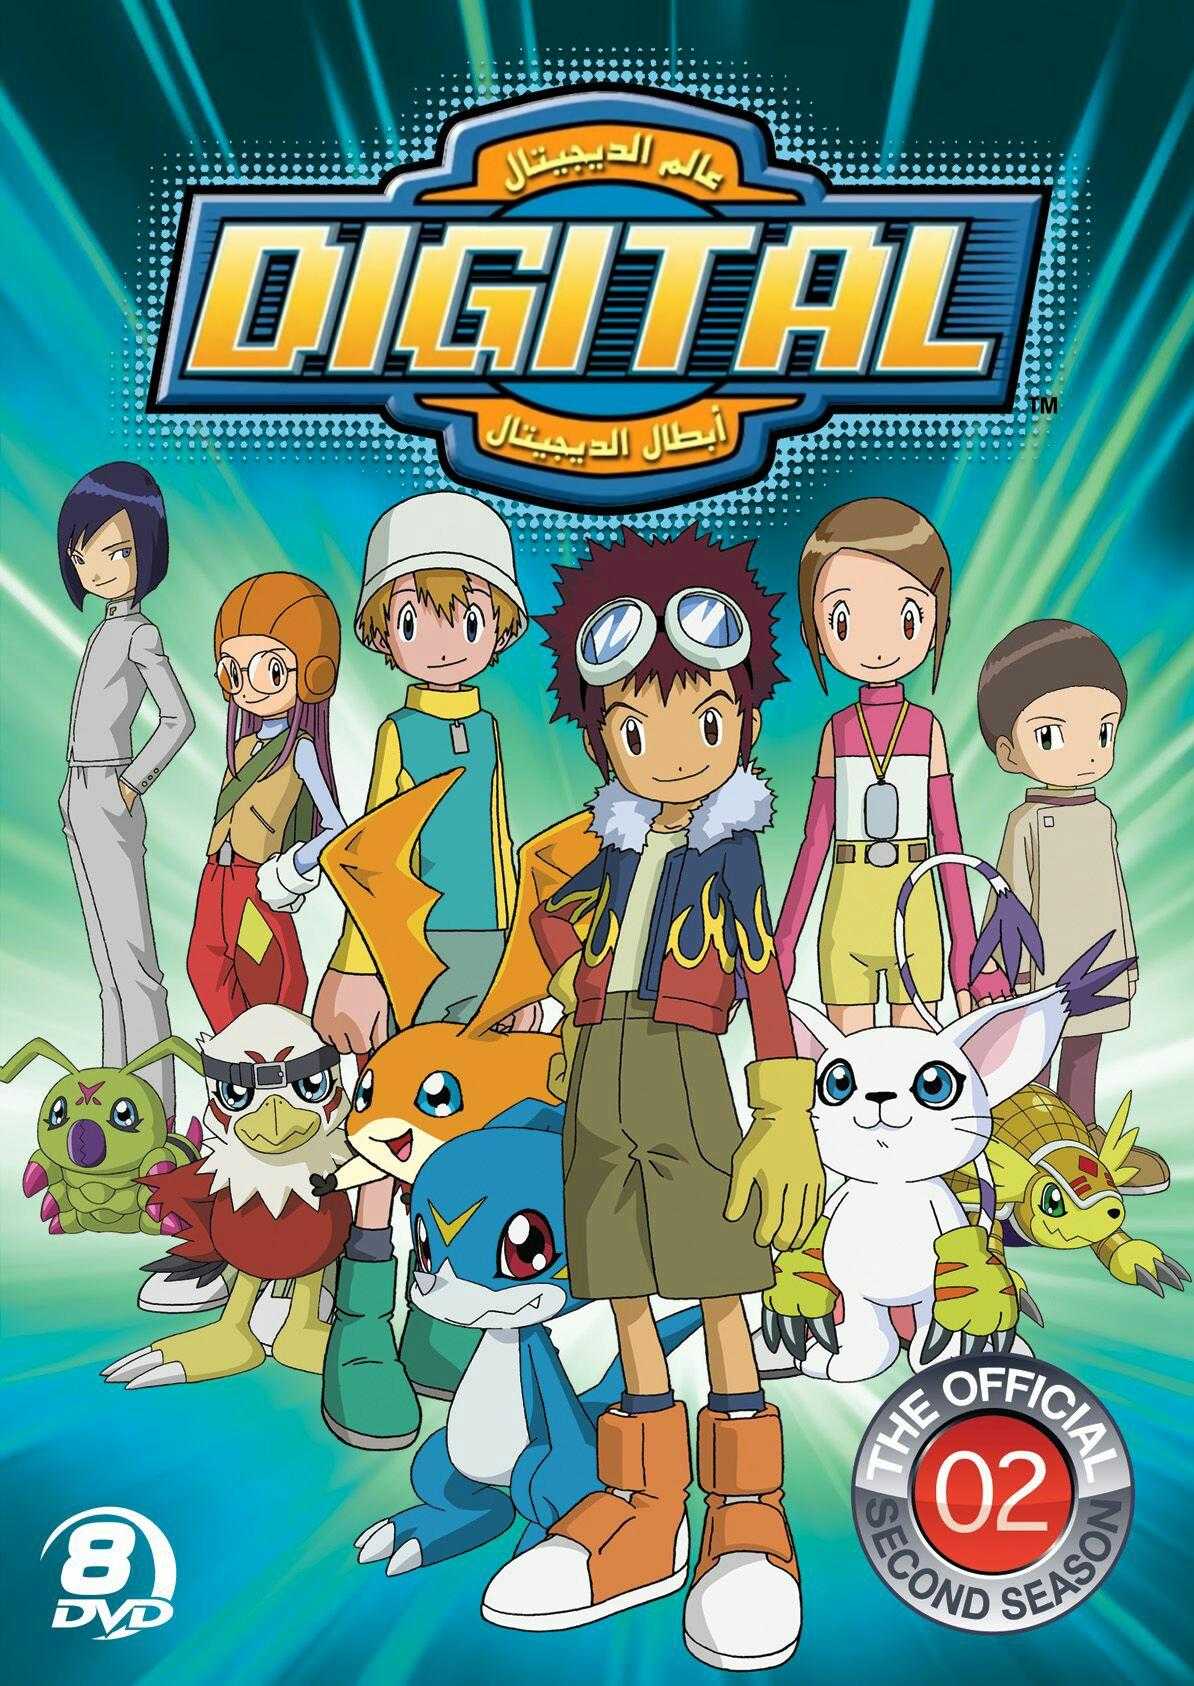 مشاهدة انمي أبطال الديجيتال Digimon: Digital Monsters موسم 2 حلقة 9 مدبلجة